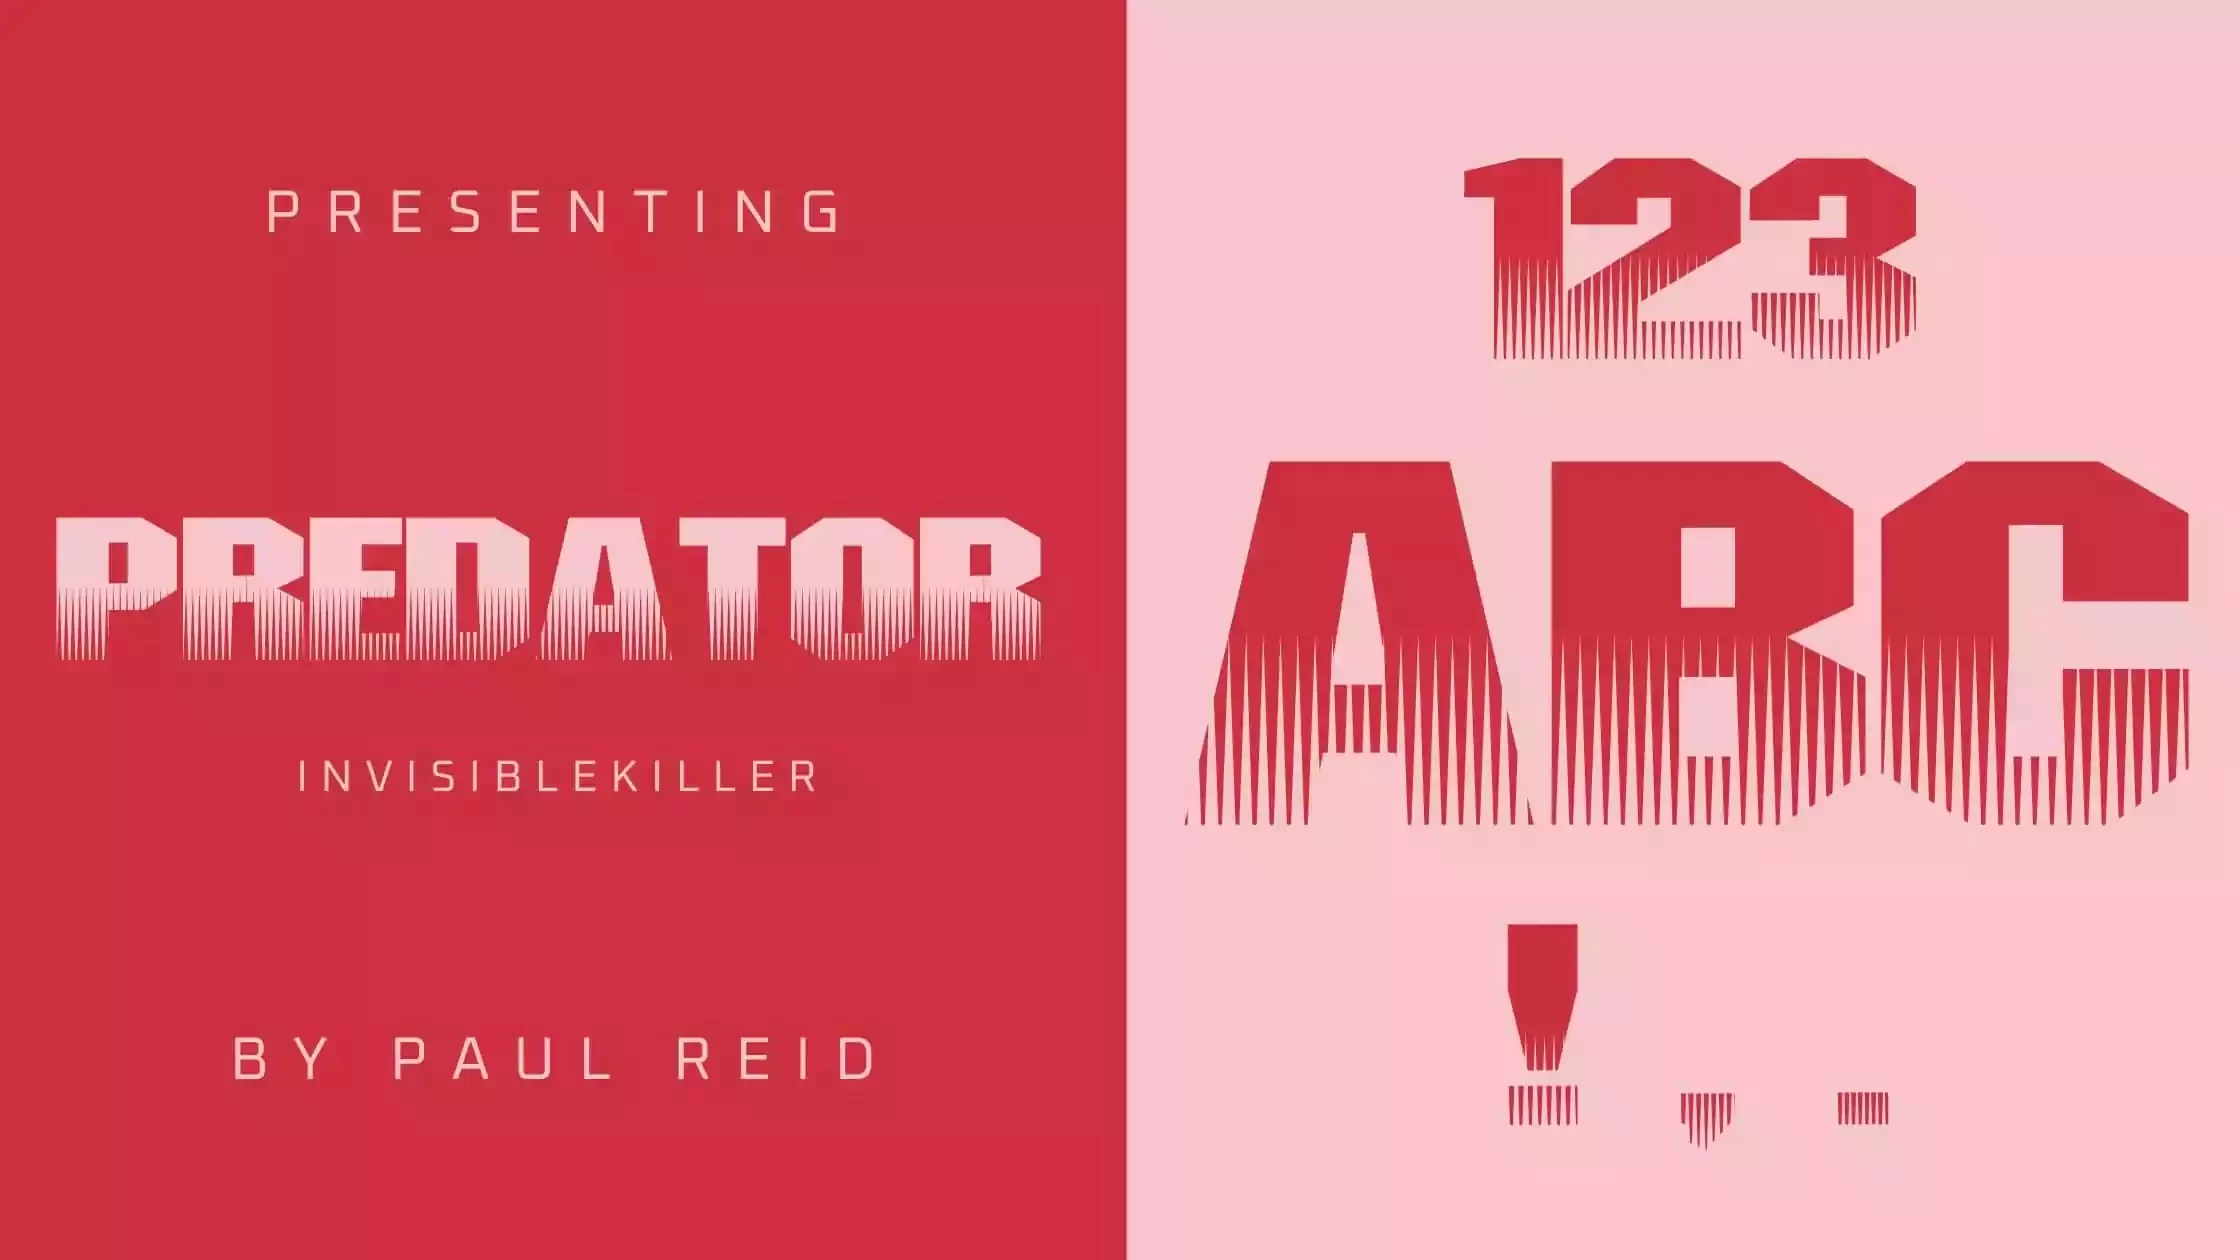 Predator Font Download